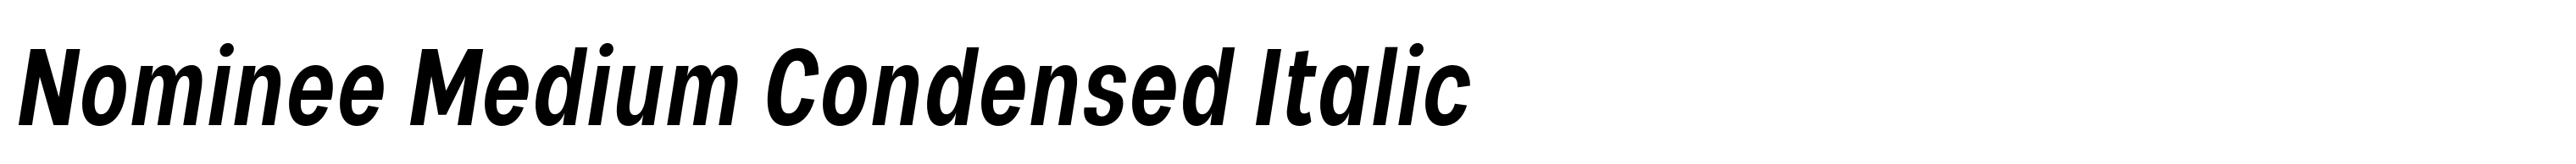 Nominee Medium Condensed Italic